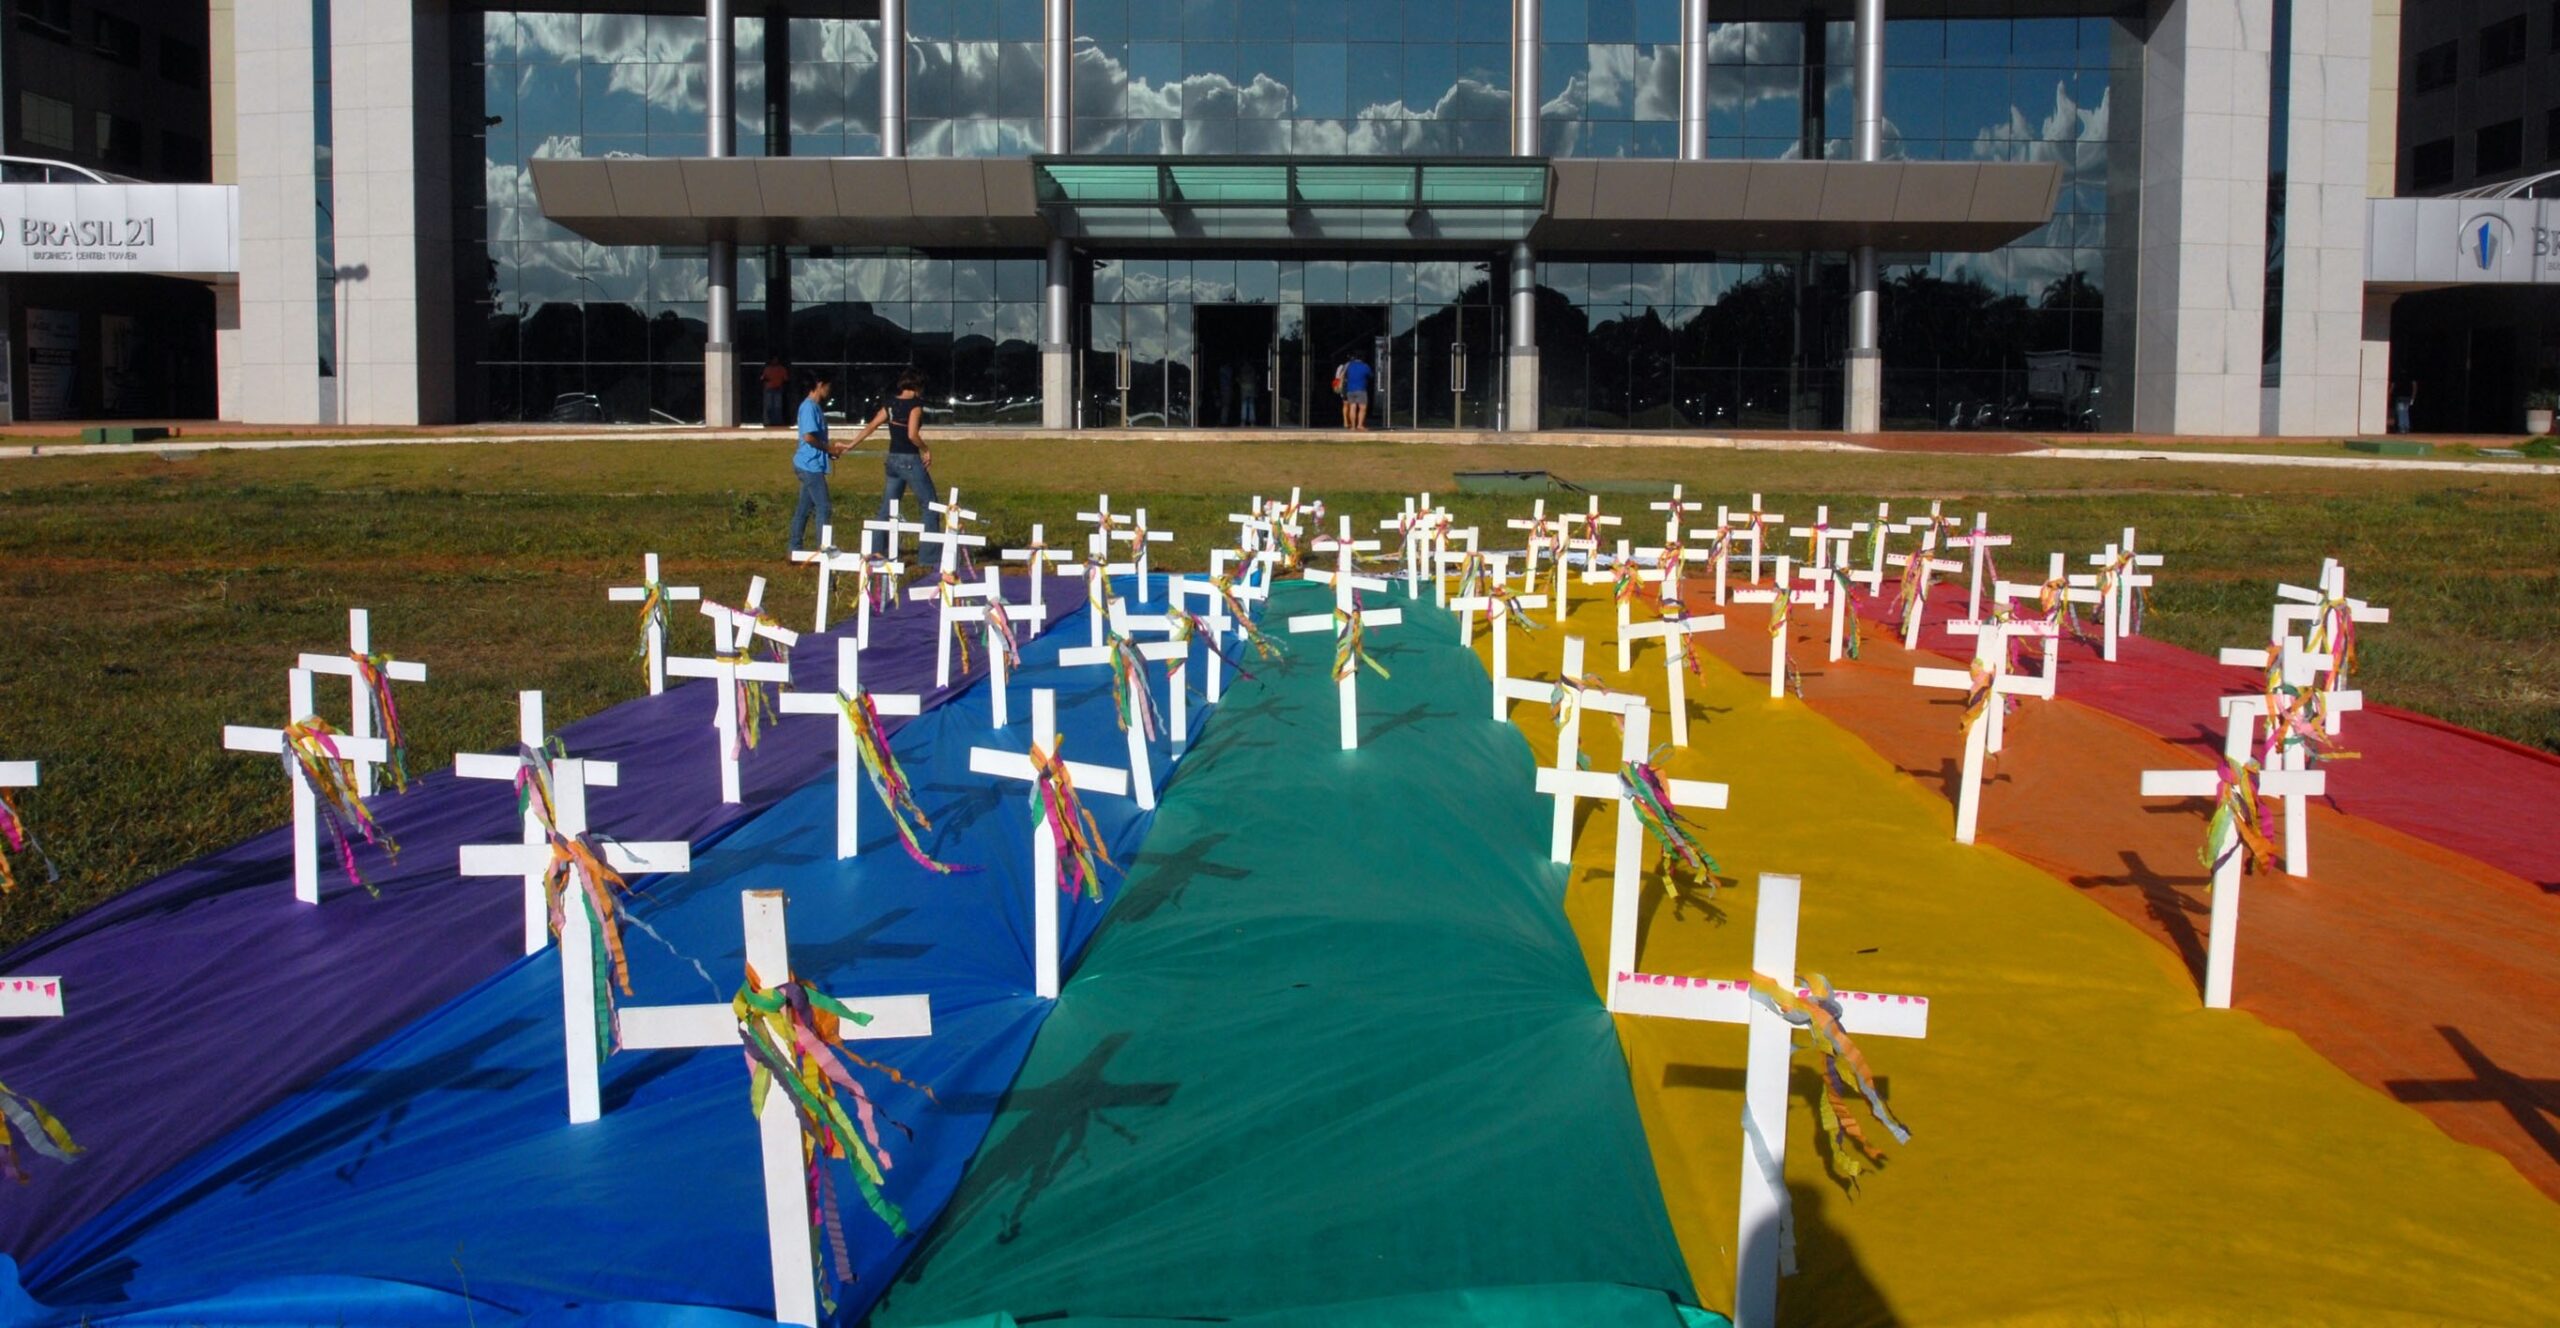 Brasil registra 1 caso de violência contra pessoas LGBT+ a cada 65 minutos